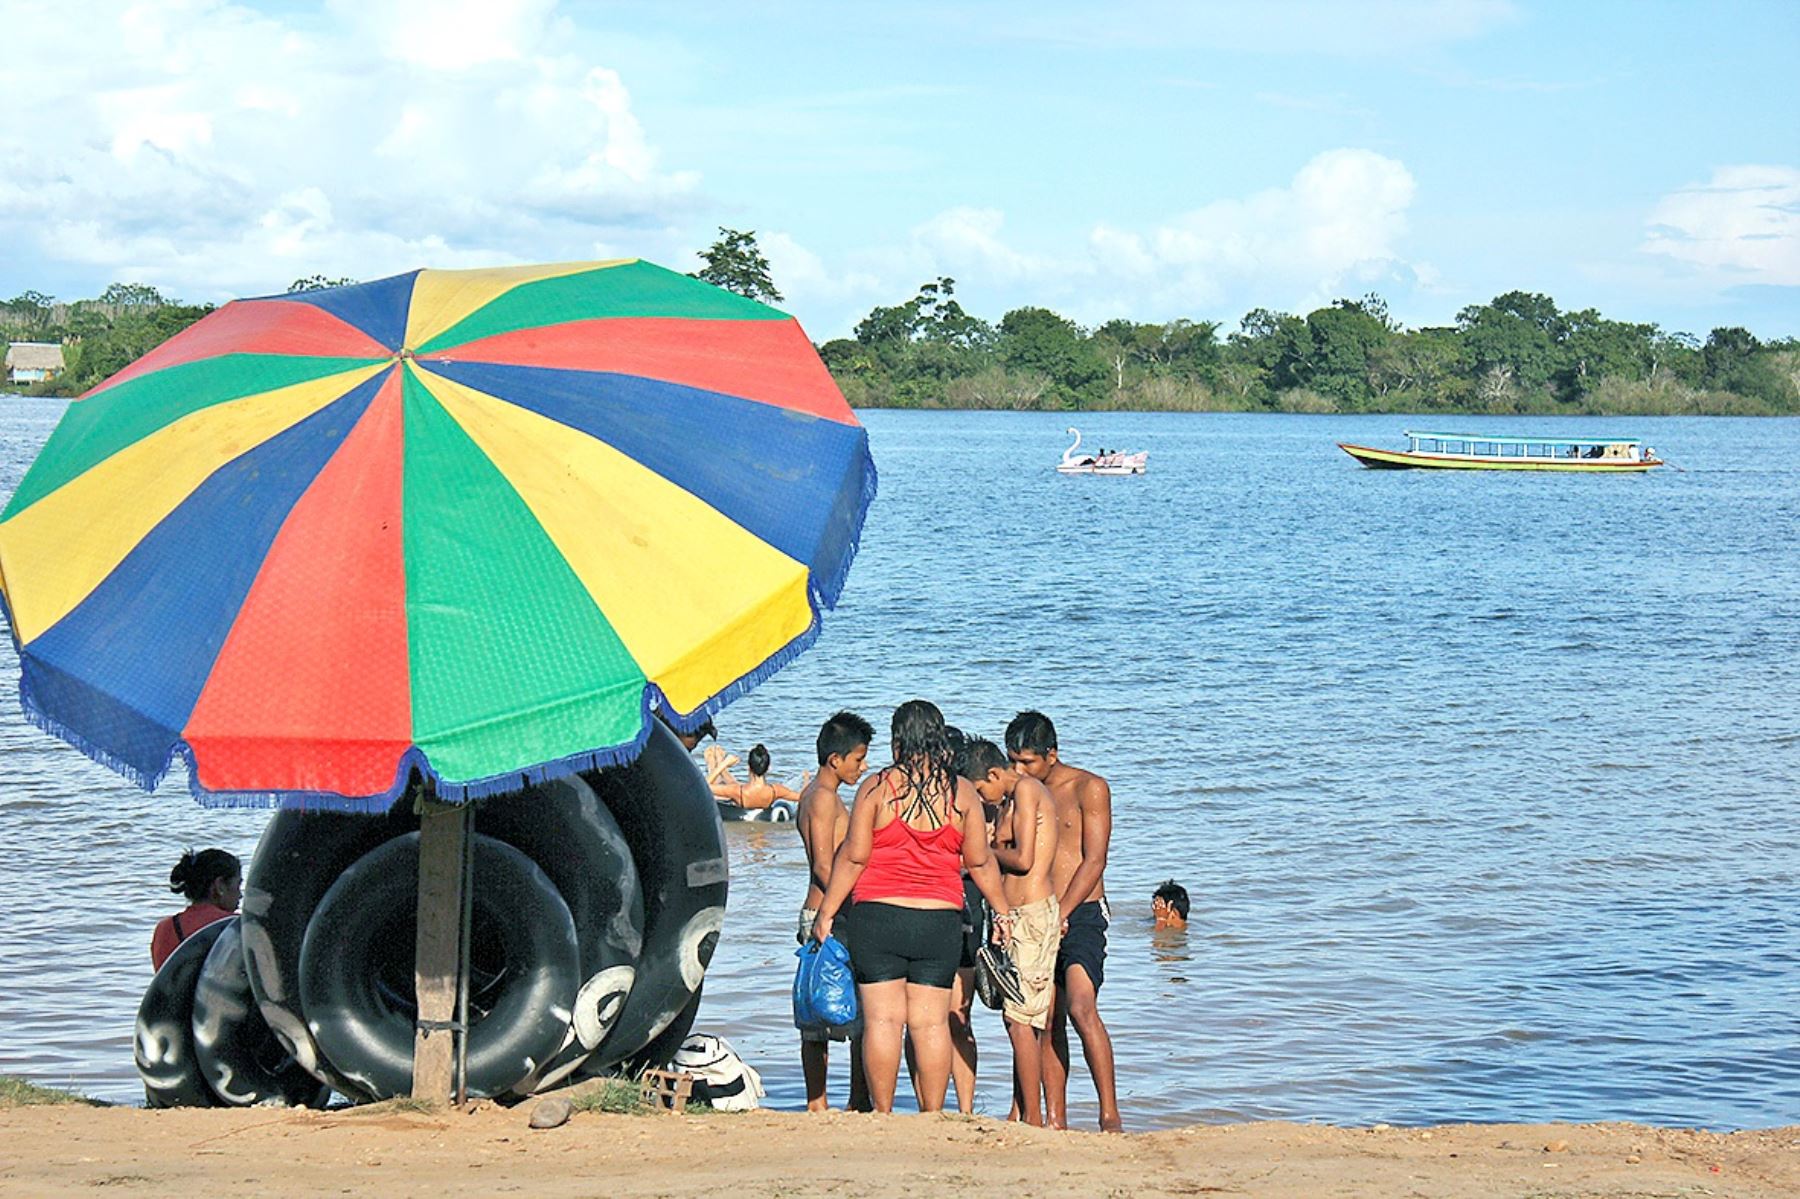 Los pobladores de la zona aprovechan para refrescarse del fuerte calor en las aguas de la hermosa laguna selvática.